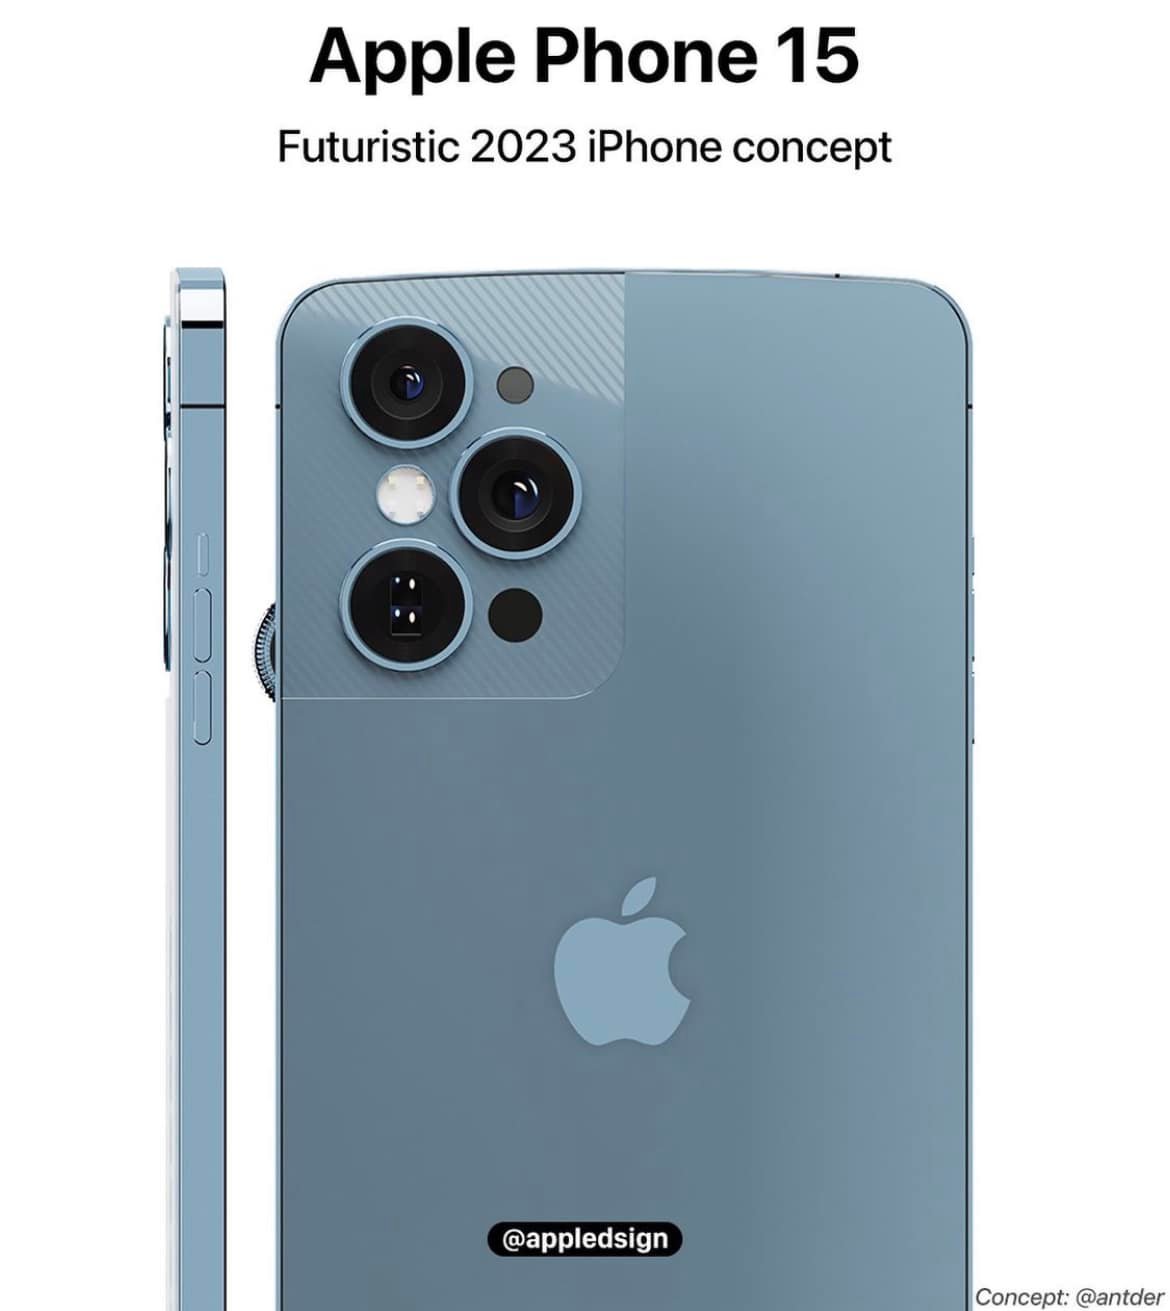 Xuất hiện bản concept iPhone mới cực dị, iFan chắc cũng phải lắc đầu ngao ngán - Ảnh 5.